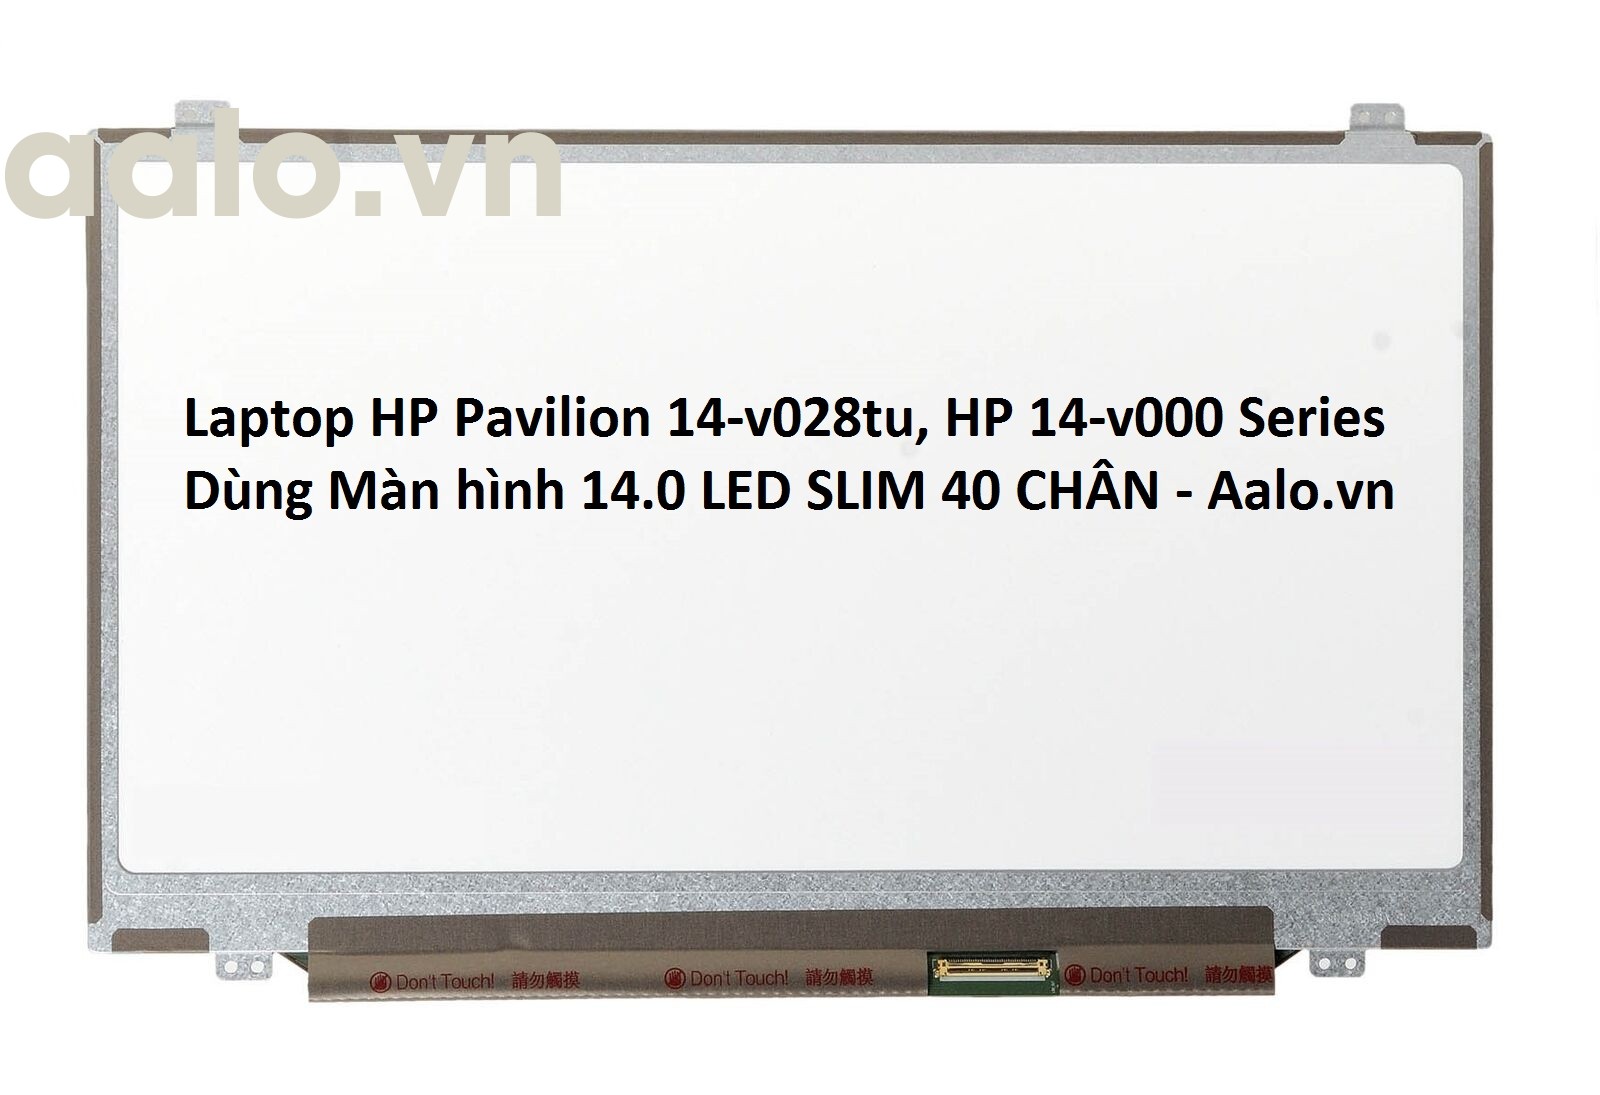 Màn hình Laptop HP Pavilion 14-v028tu, HP 14-v000 Series